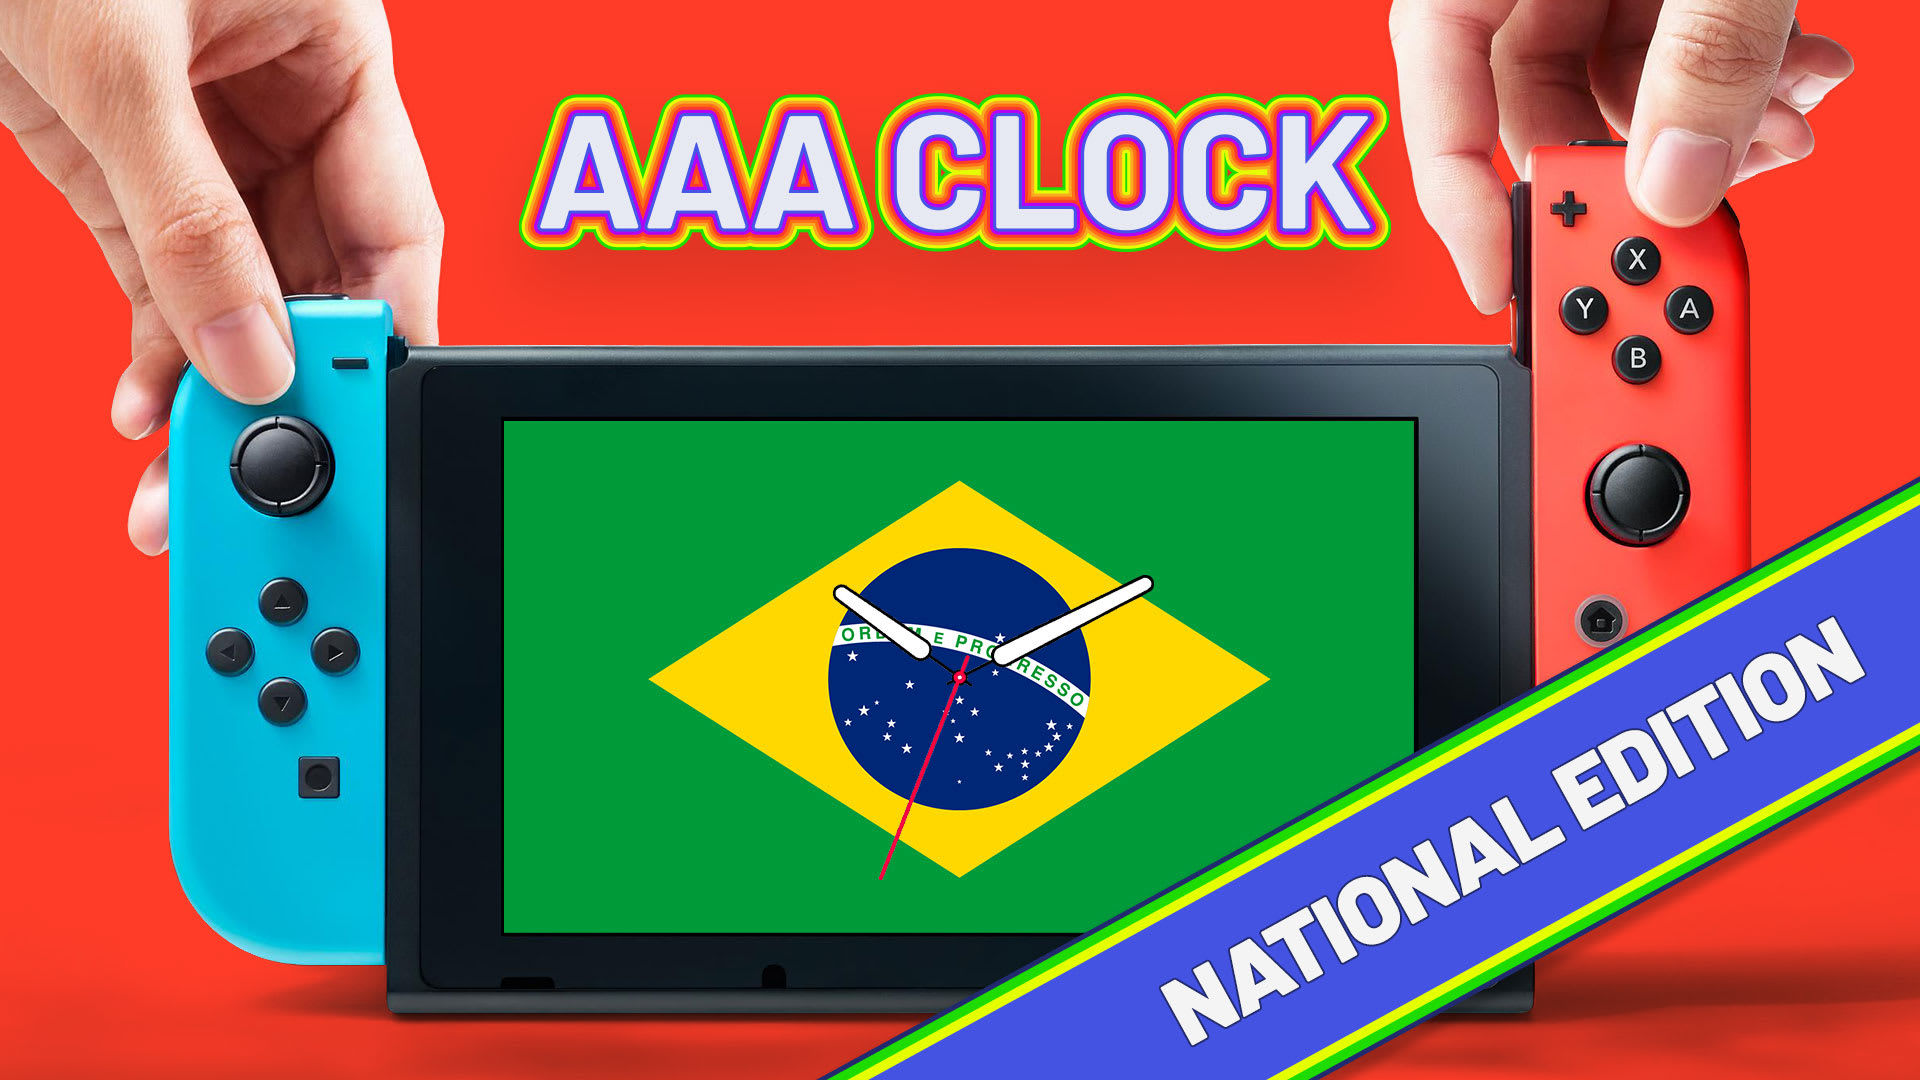 AAA Clock National Edition